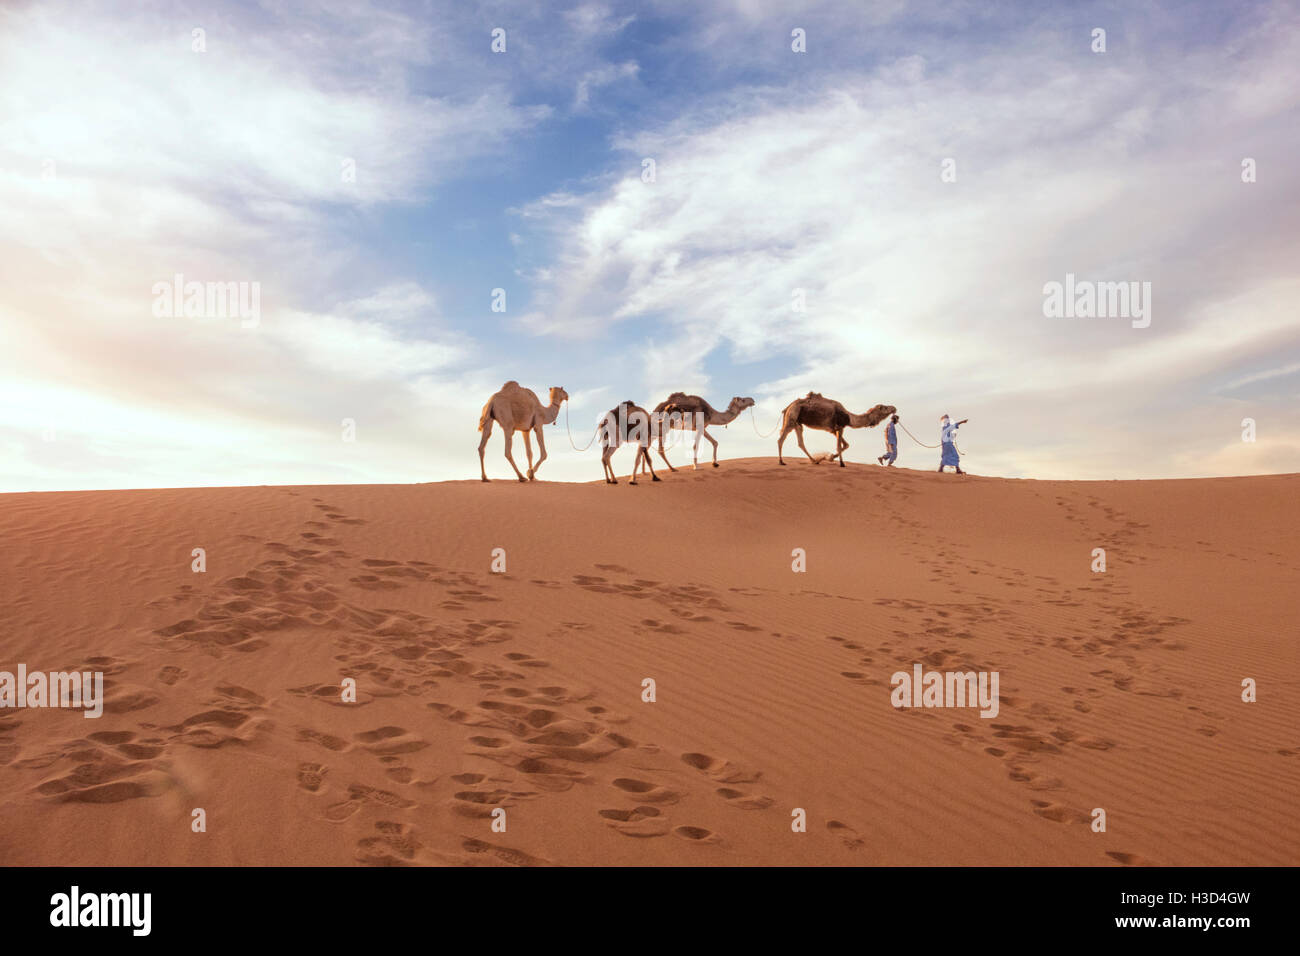 Les gens qui marchent avec des chameaux sur le sable dans le desert against sky Banque D'Images